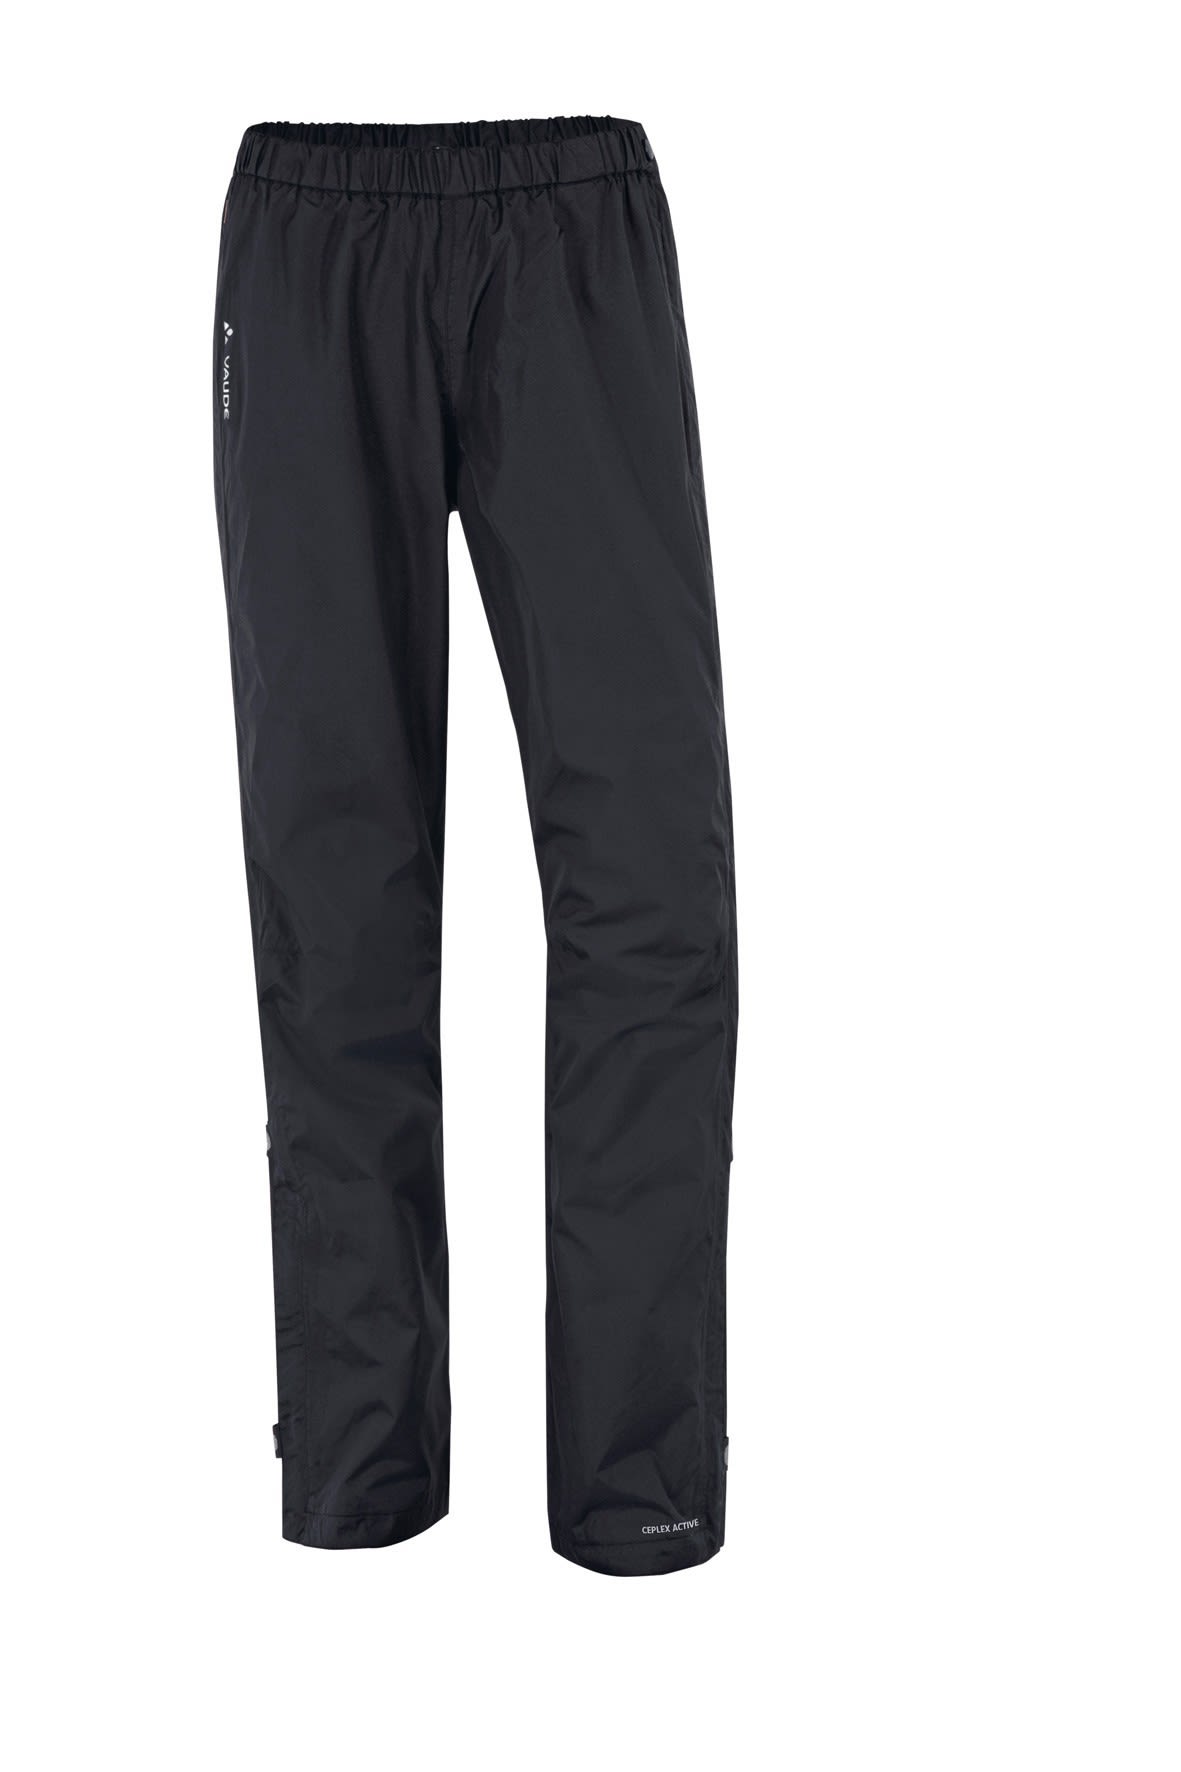 Vaude Fluid Full-Zip Pants Schwarz- Female Hosen- Grsse 34 - Farbe Black unter Vaude